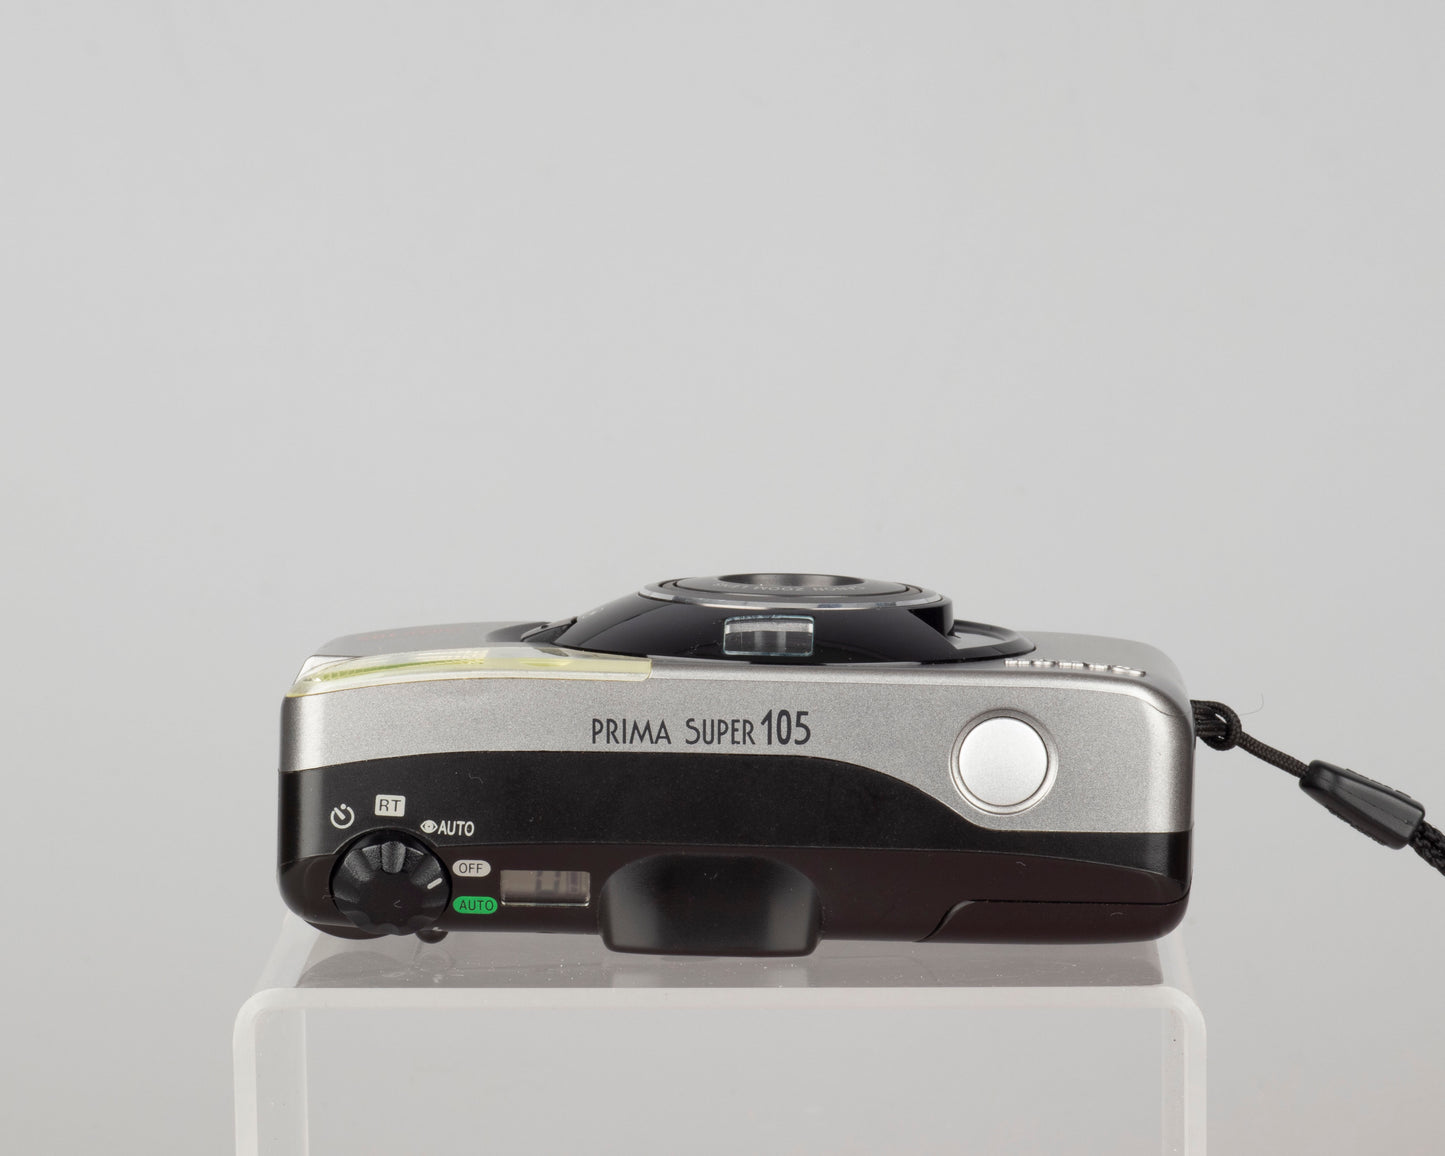 Canon Prima Super 105 35mm film camera w/ original box and manual (serial 1114308)